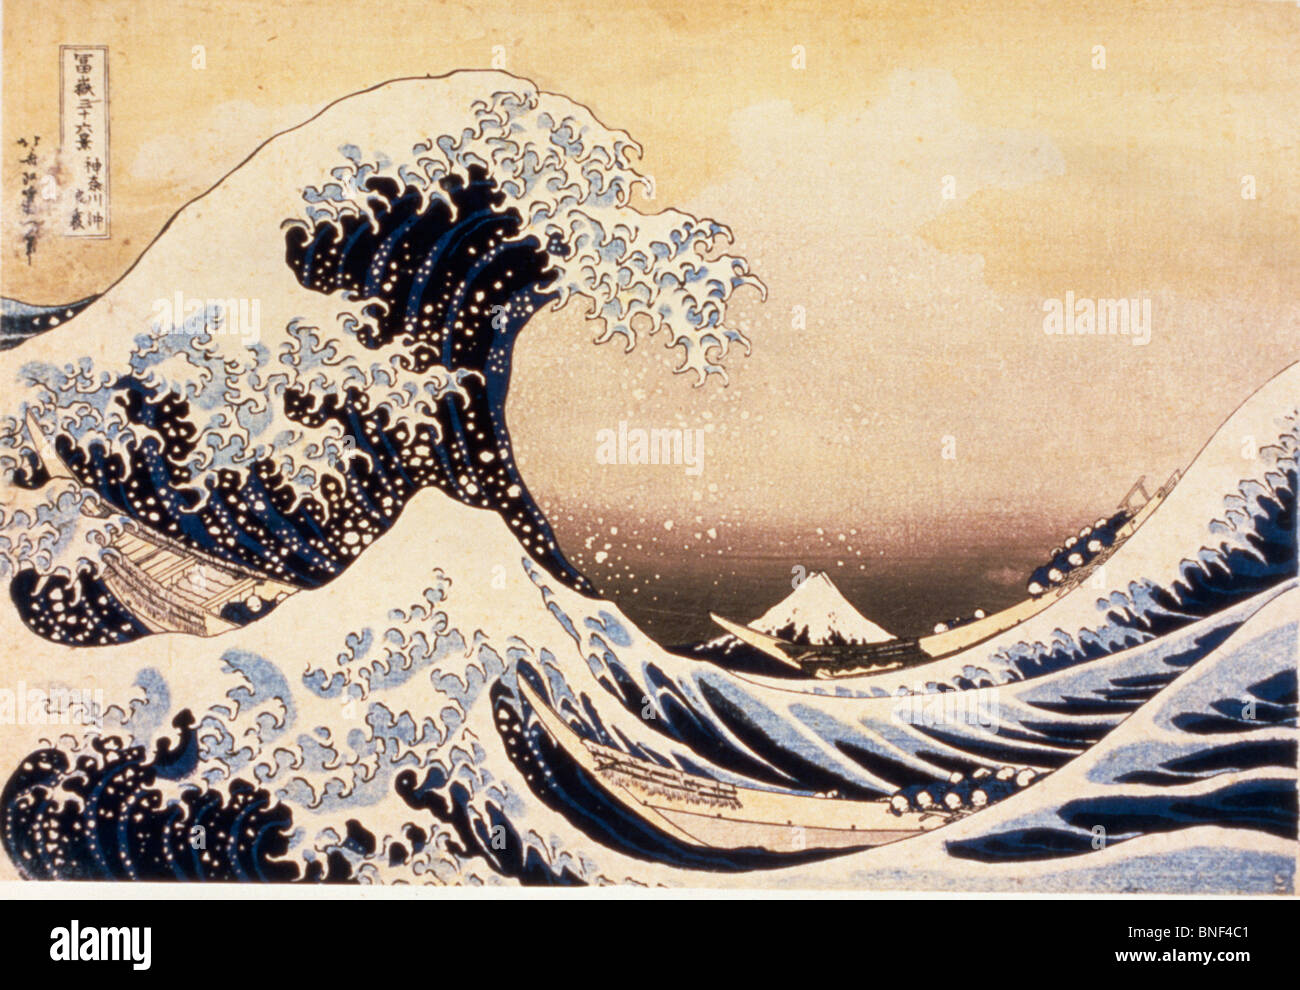 La grande vague de Kanagawa par Katsushika Hokusai estampe période Edo 19ème siècle 1760-1849 Musée national de Tokyo Japon Banque D'Images